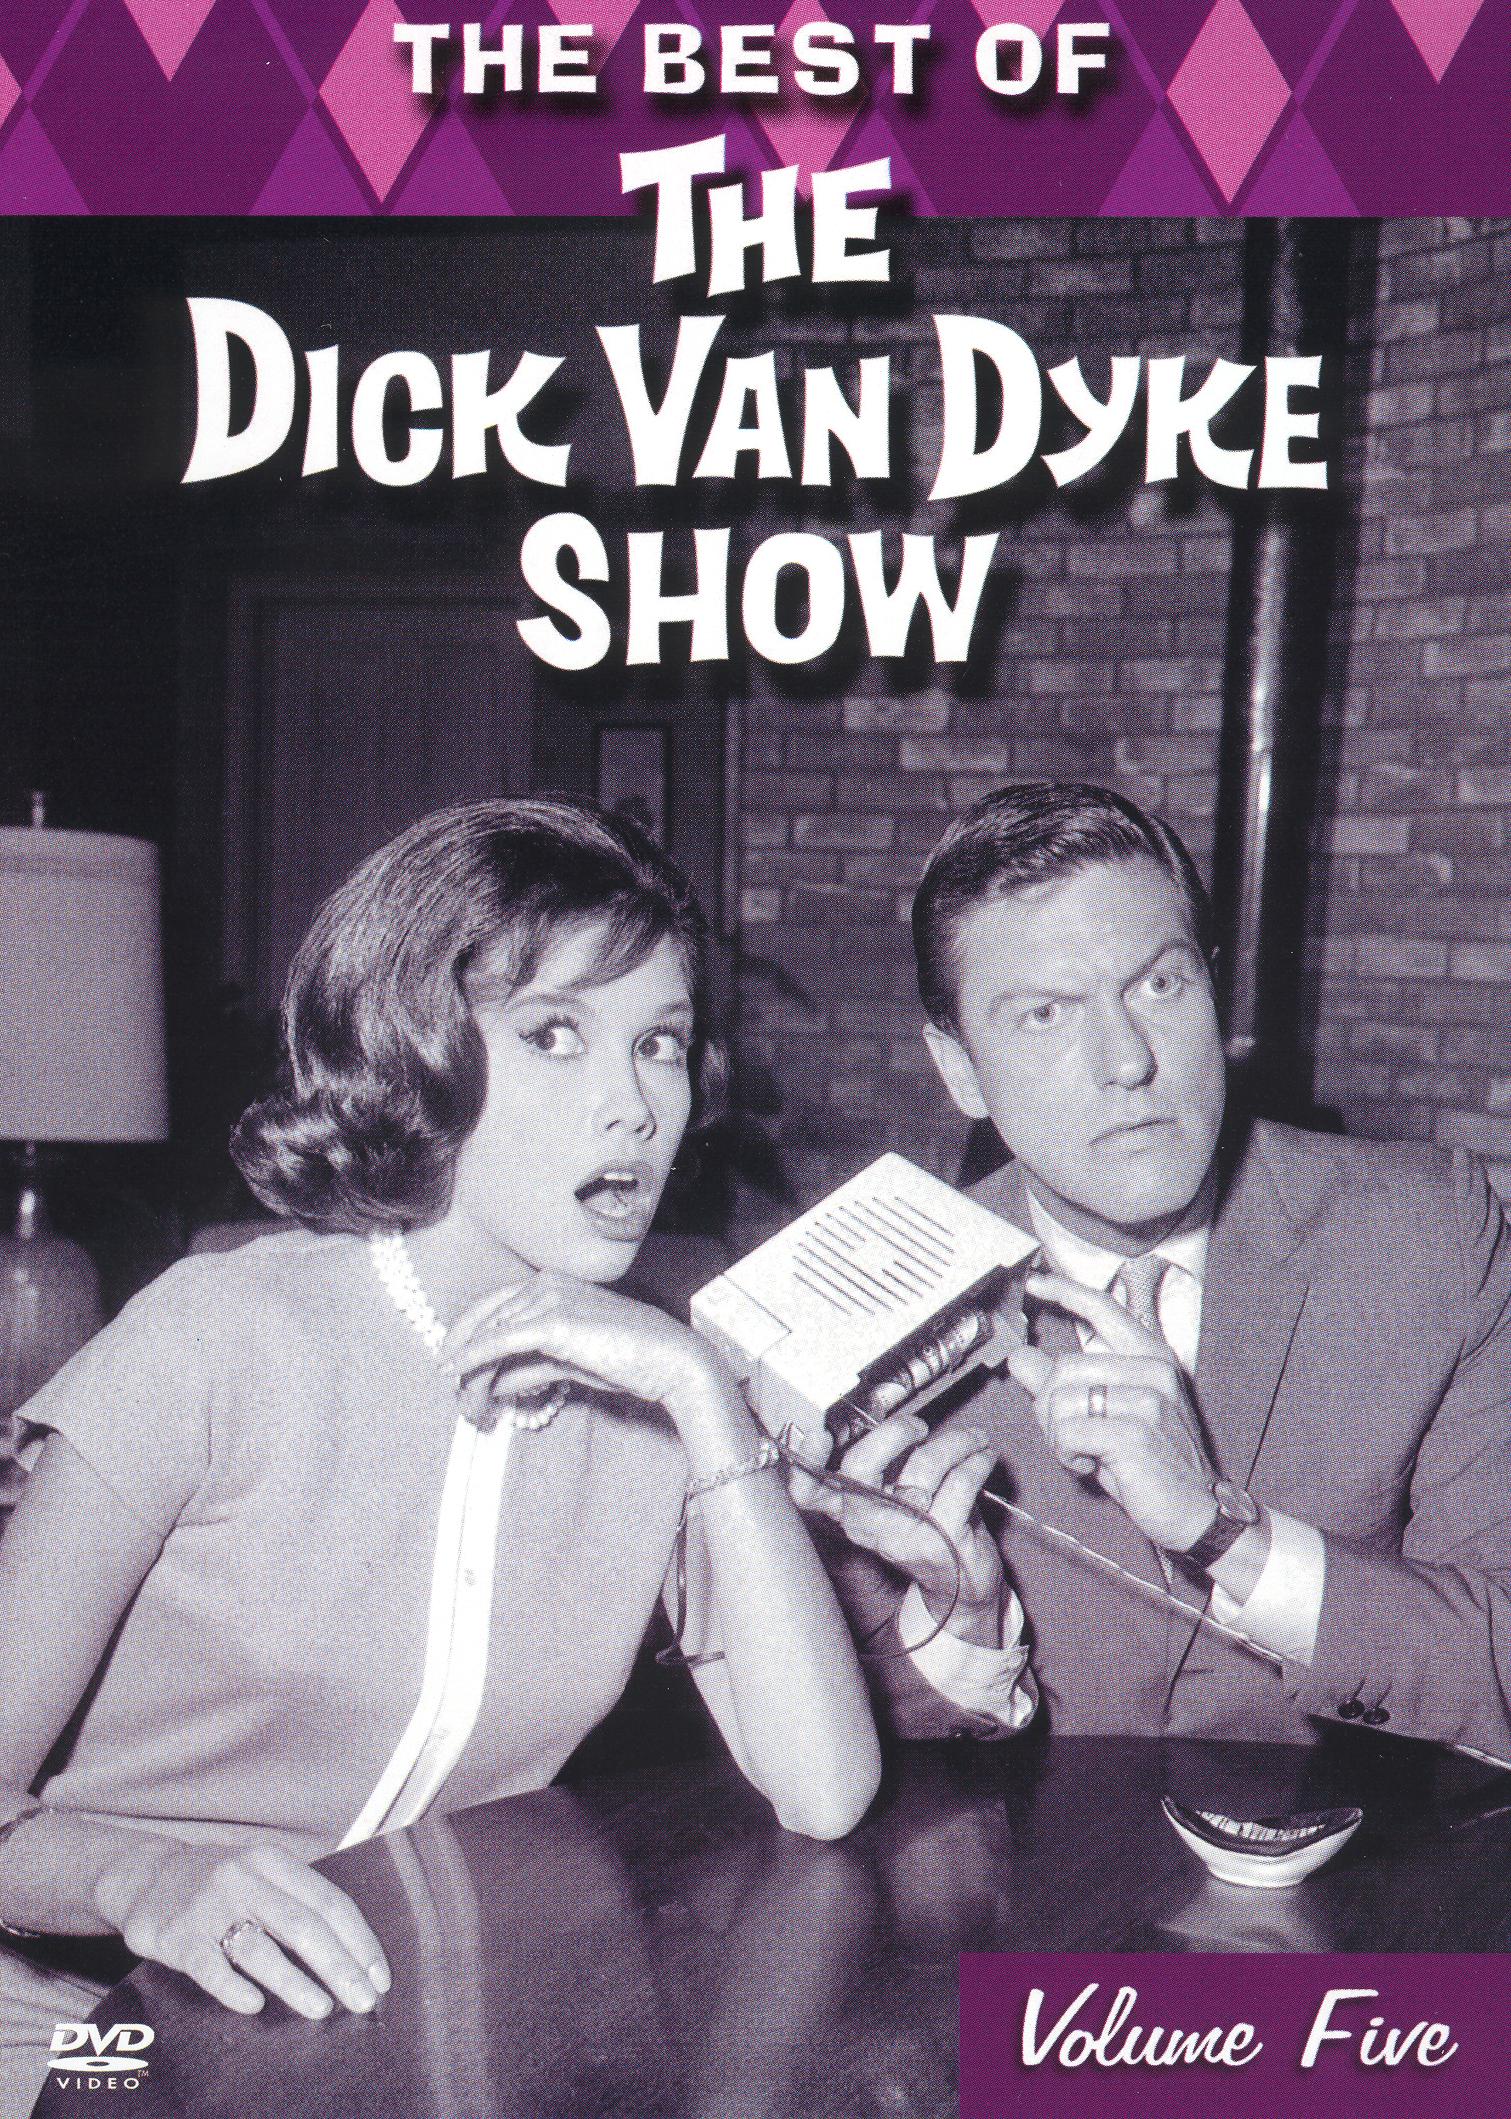 Dick van dyke tv selling